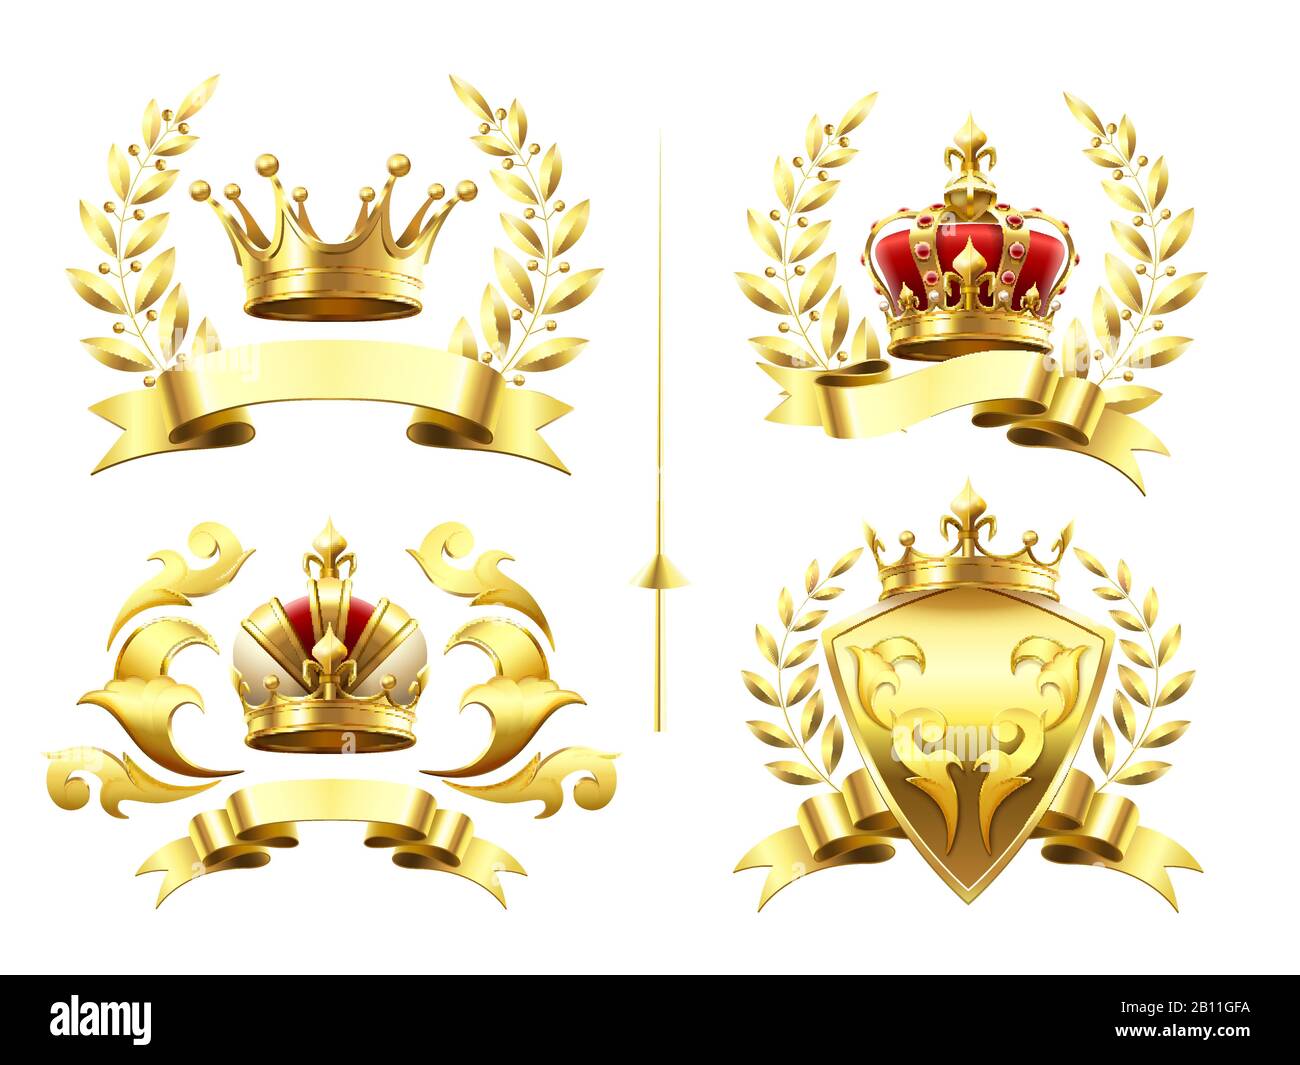 Realistische heraldische Embleme. Insignien mit goldener Krone, goldener krönender Medaille und Emblem mit Königskronen auf Schilden 3D-Vektorsatz Stock Vektor